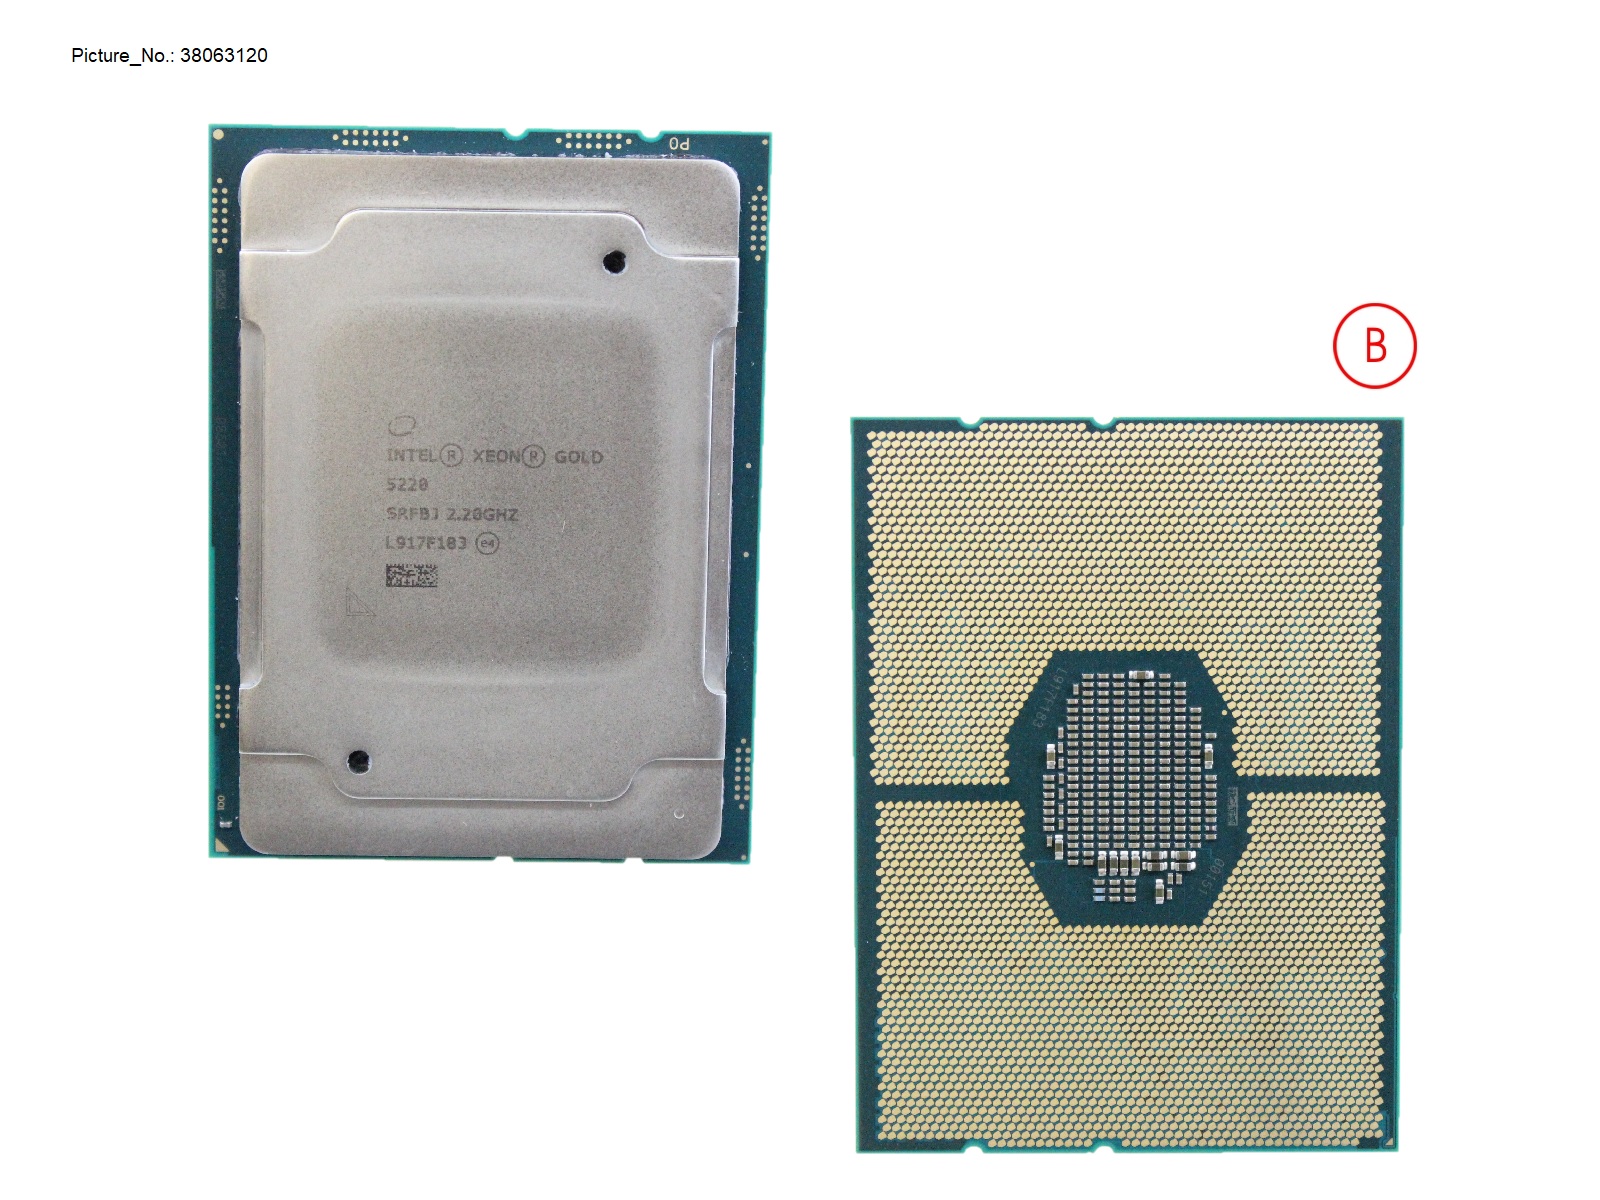 CPU INTEL XEON GOLD 5220 2200 125W